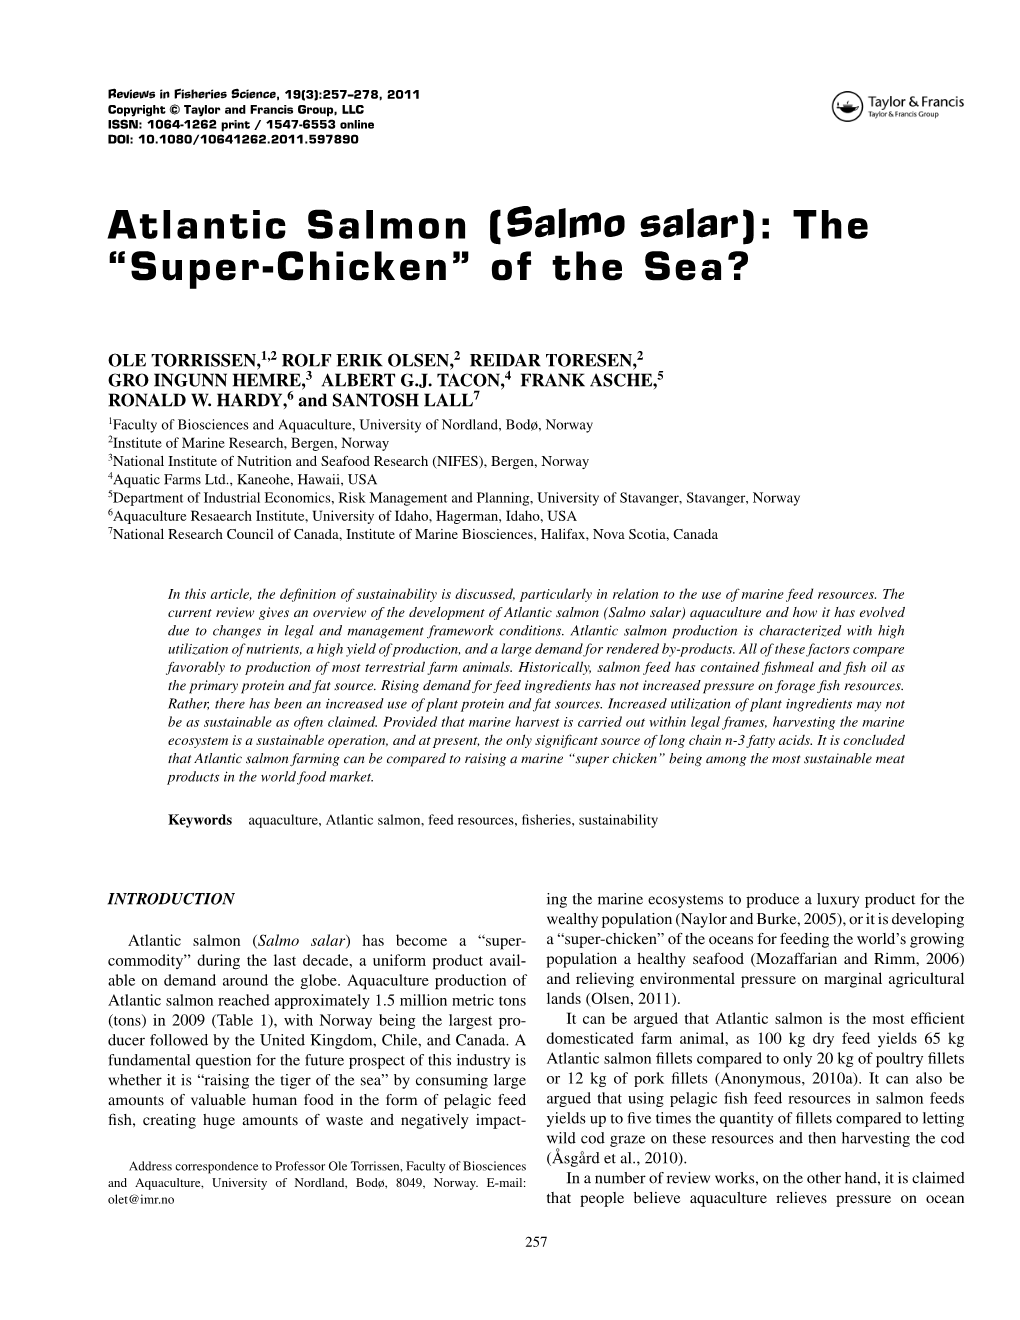 Atlantic Salmon (Salmo Salar): the “Super-Chicken” of the Sea?